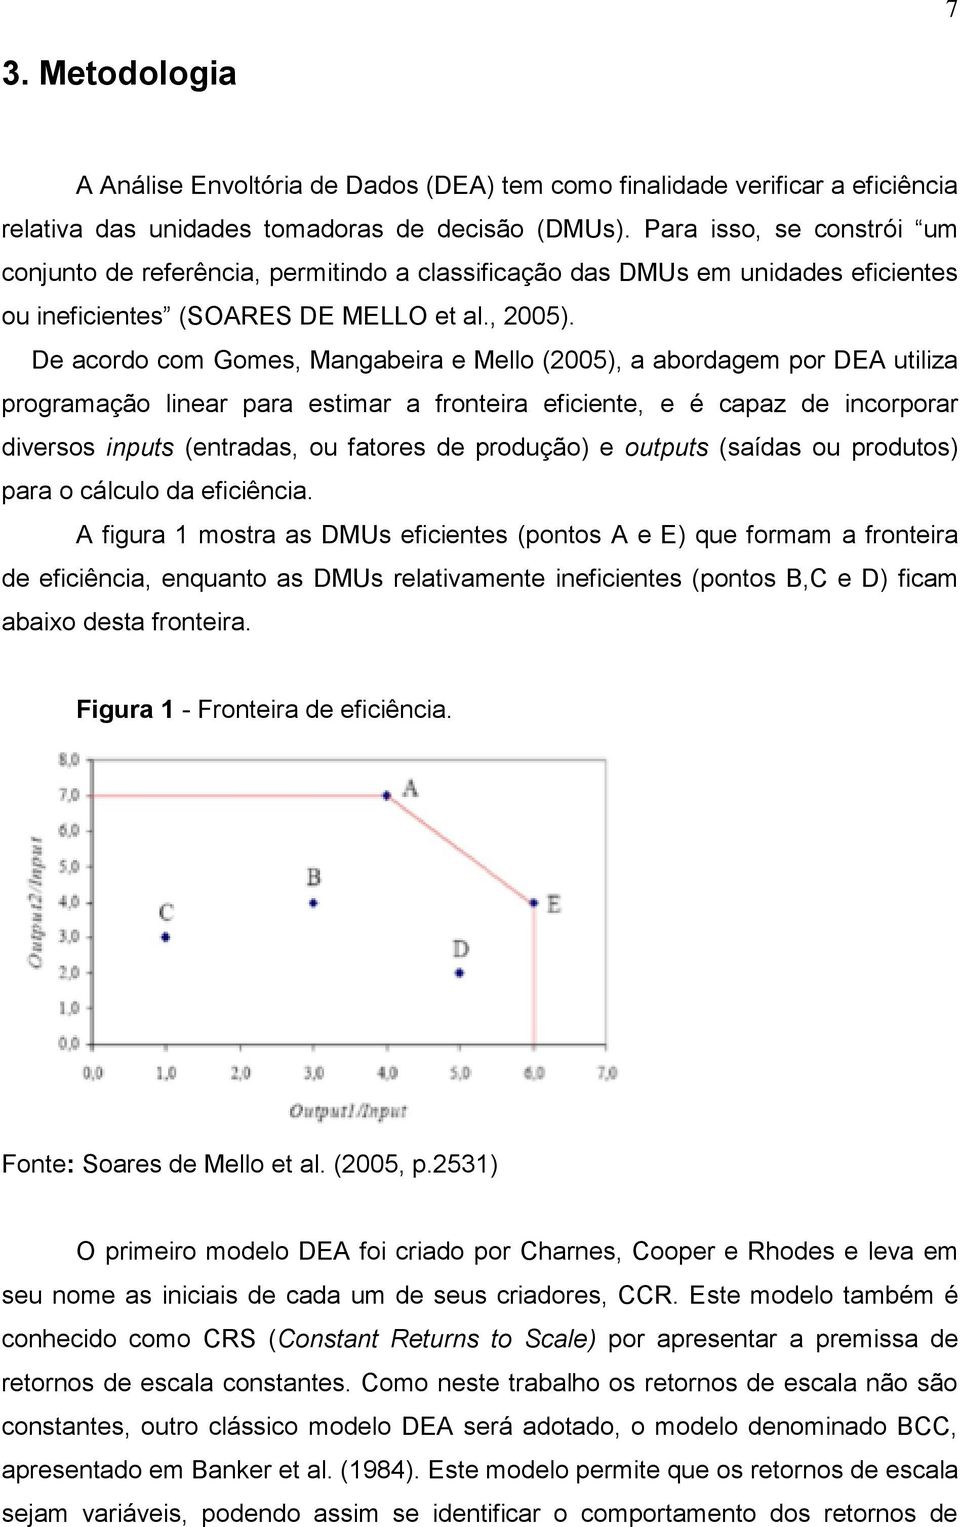 De acordo com Gomes, Mangabeira e Mello (2005), a abordagem por DEA utiliza programação linear para estimar a fronteira eficiente, e é capaz de incorporar diversos inputs (entradas, ou fatores de